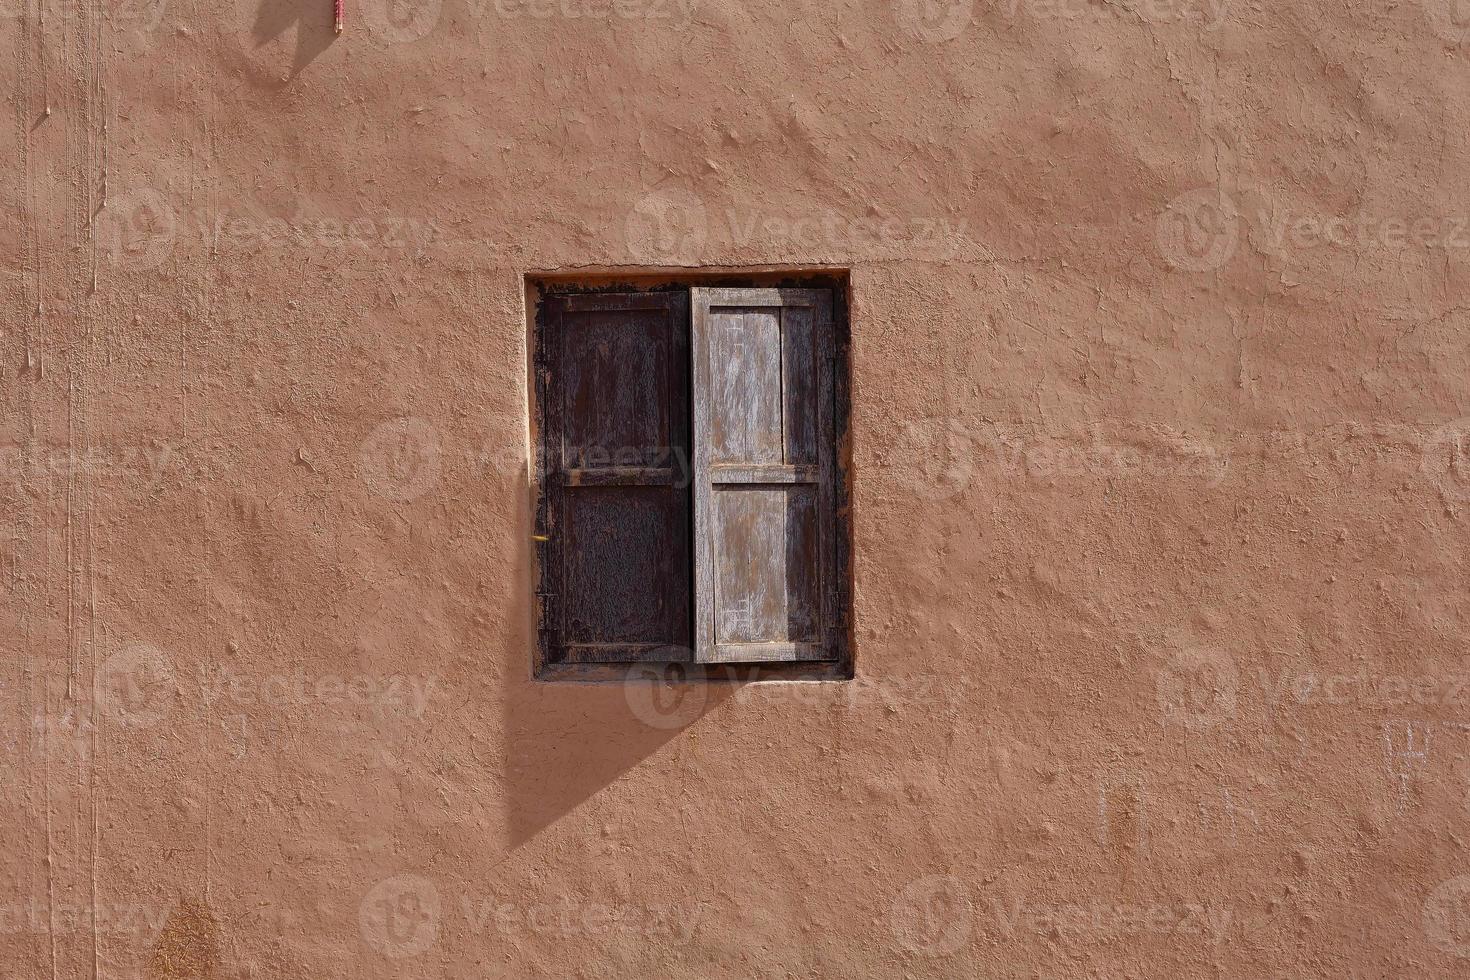 oude huismuur en houten raam tuyoq village valleyxinjiang china. foto